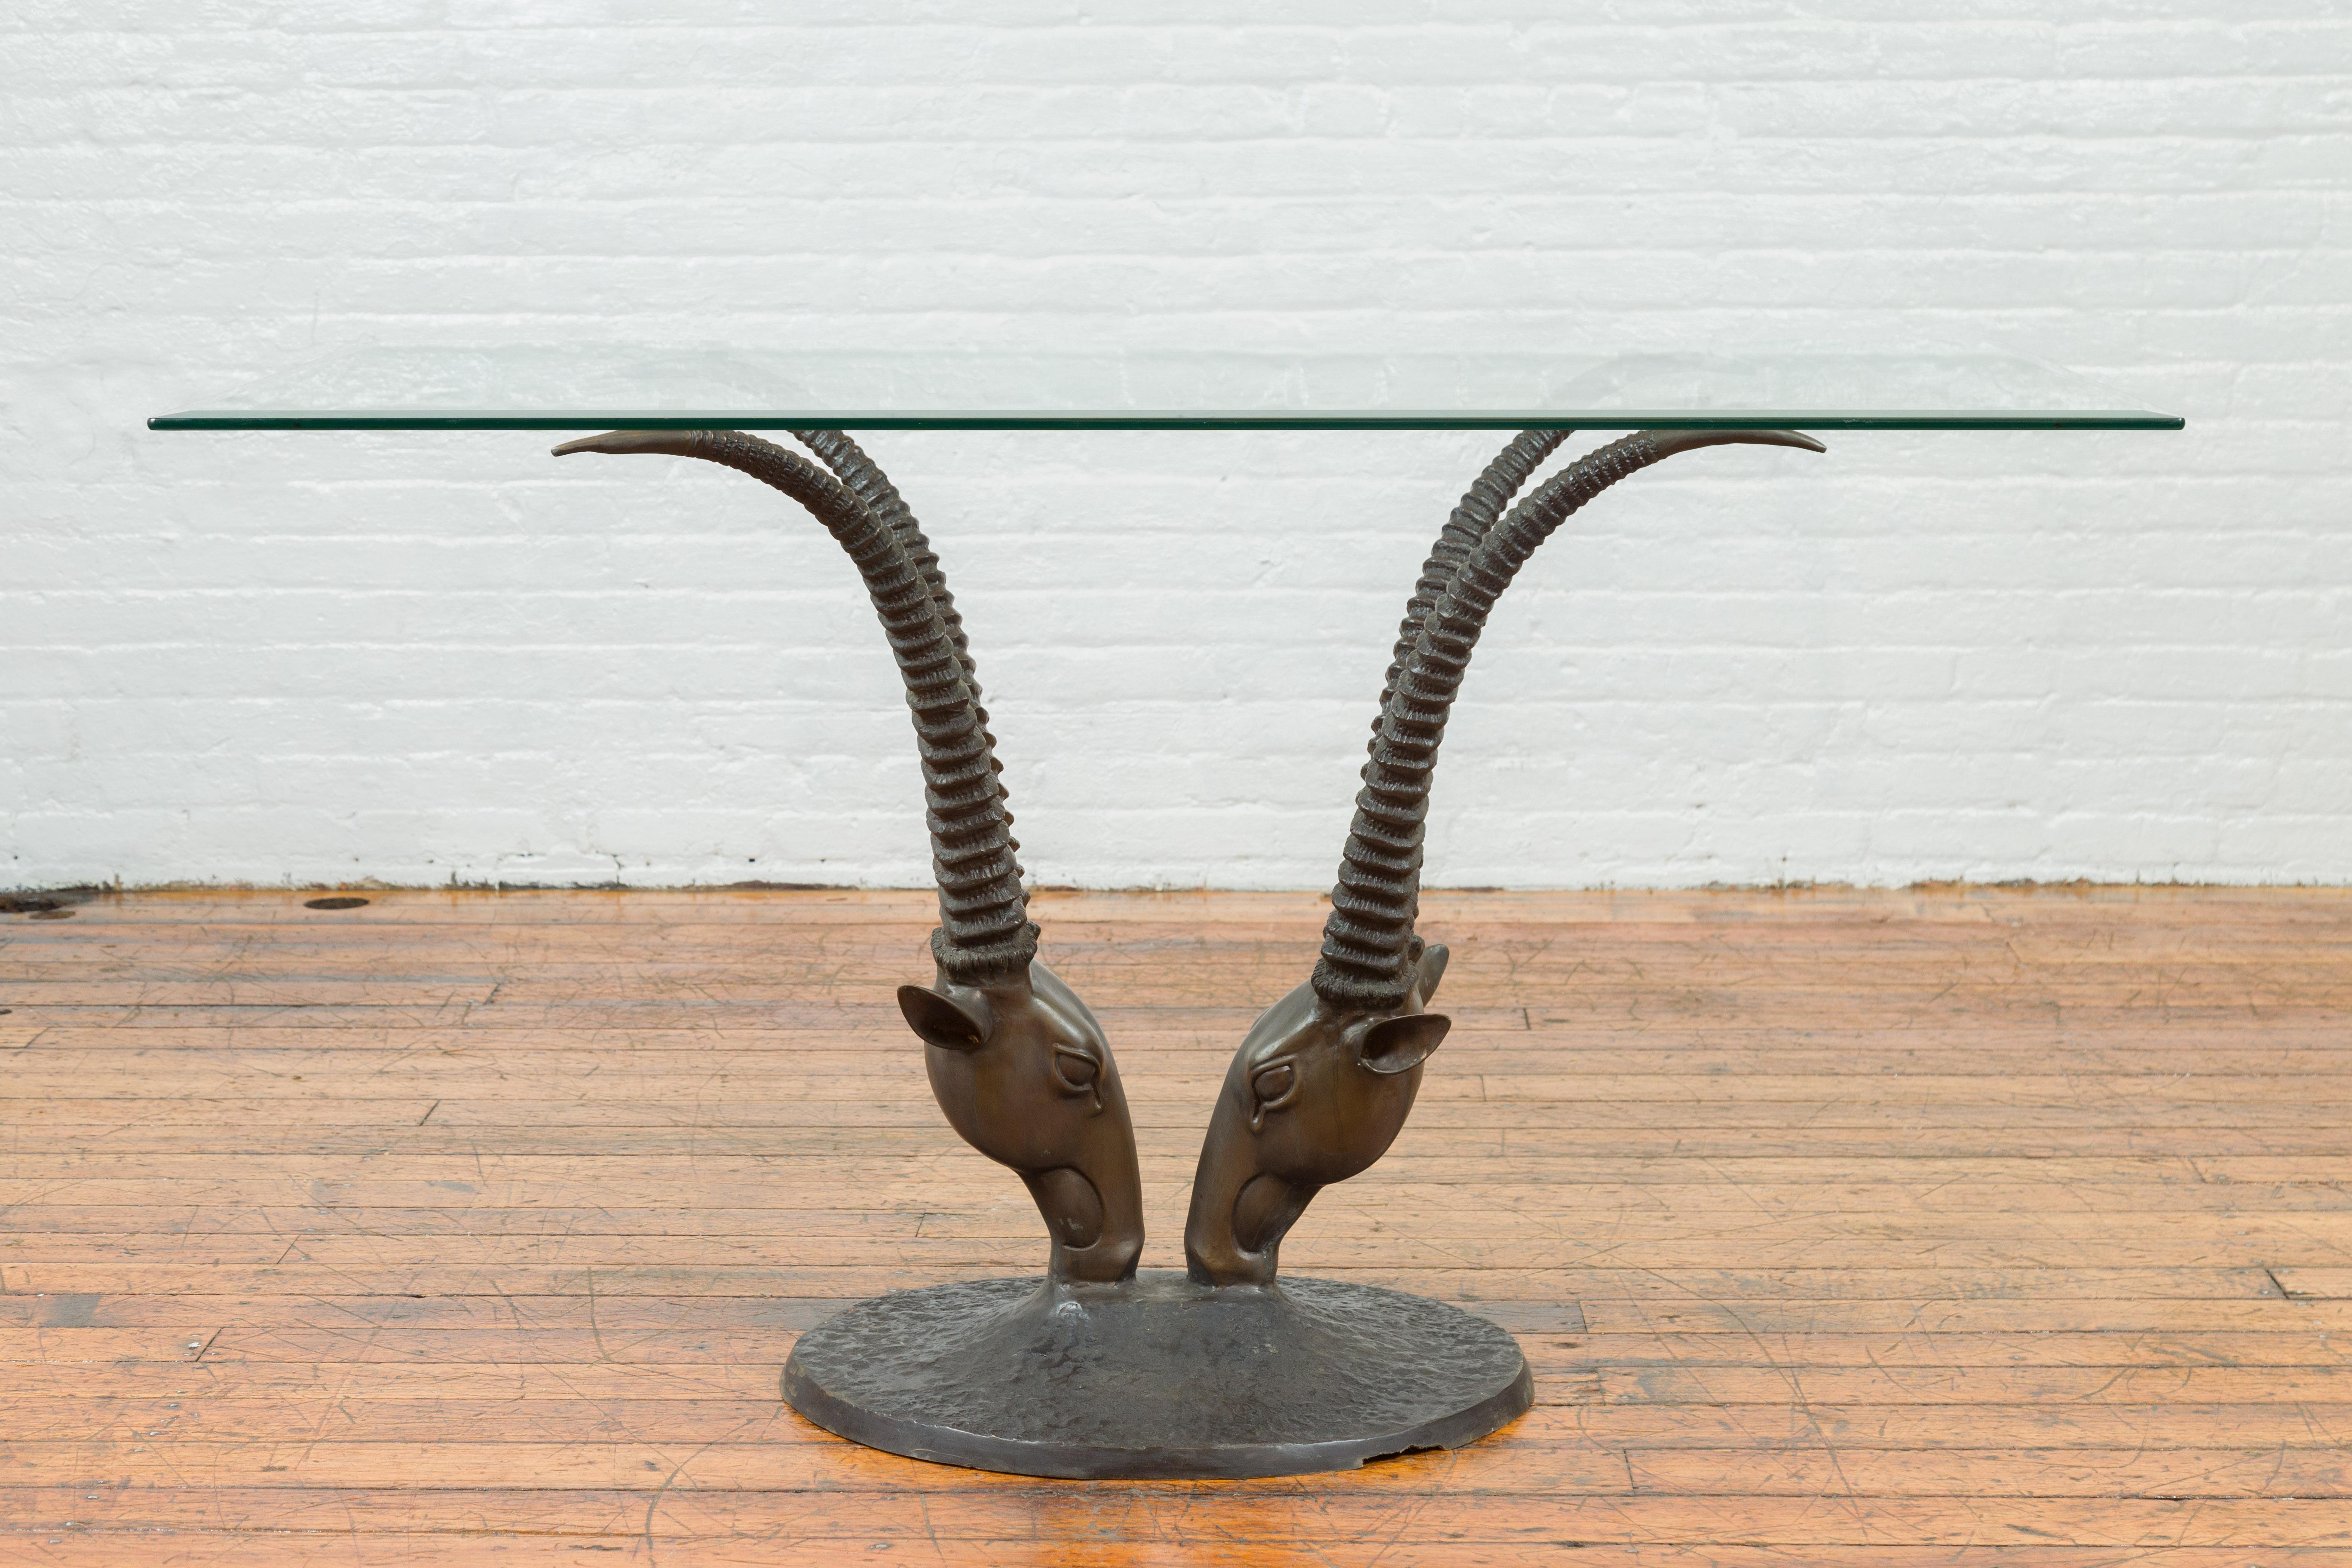 Base de table à manger contemporaine en bronze à double antilope, plateau non inclus. Créée selon la technique traditionnelle de la cire perdue qui permet une grande précision et finesse dans les détails, cette base de table de salle à manger